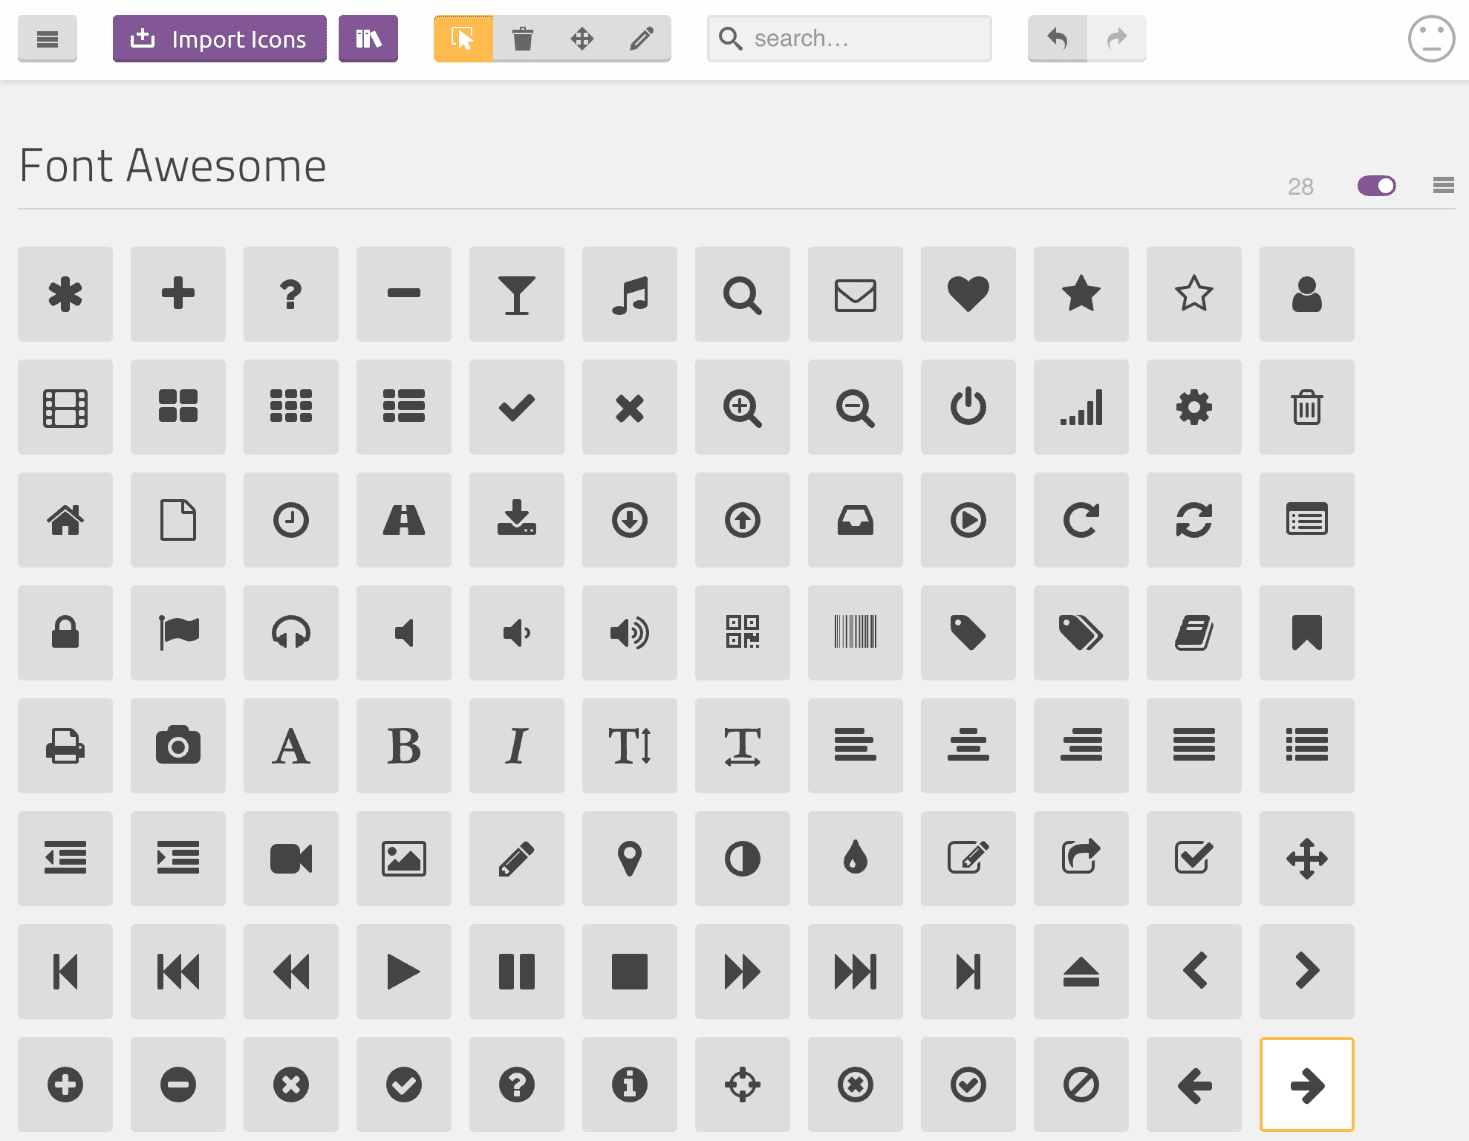 Scegliere le icone di Font Awesome